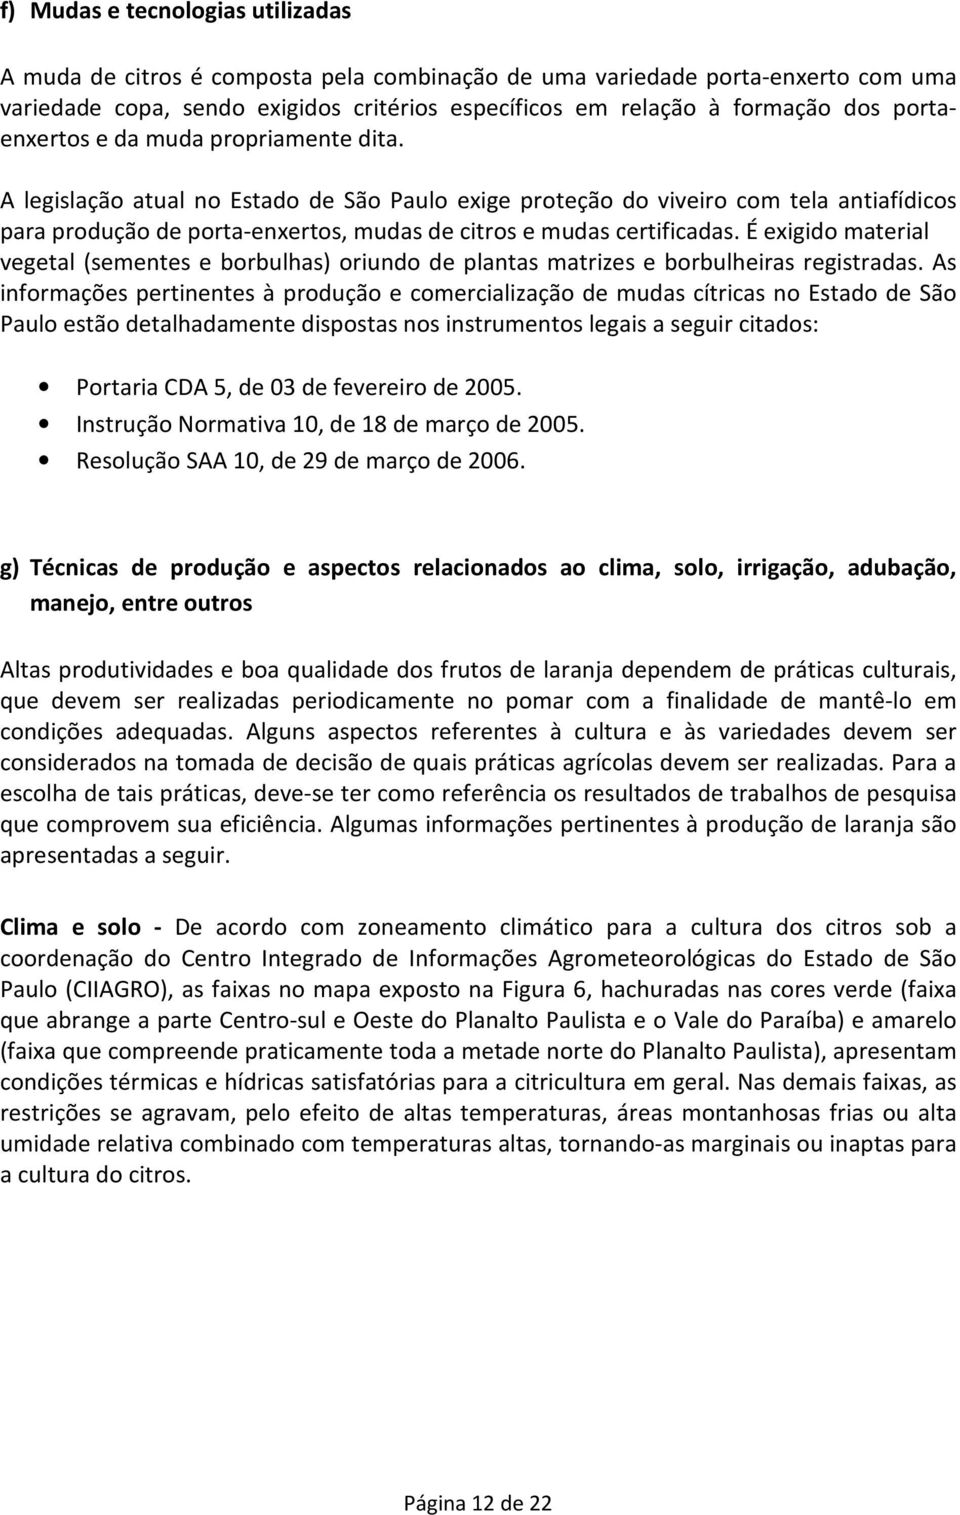 A legislação atual no Estado de São Paulo exige proteção do viveiro com tela antiafídicos para produção de porta-enxertos, mudas de citros e mudas certificadas.